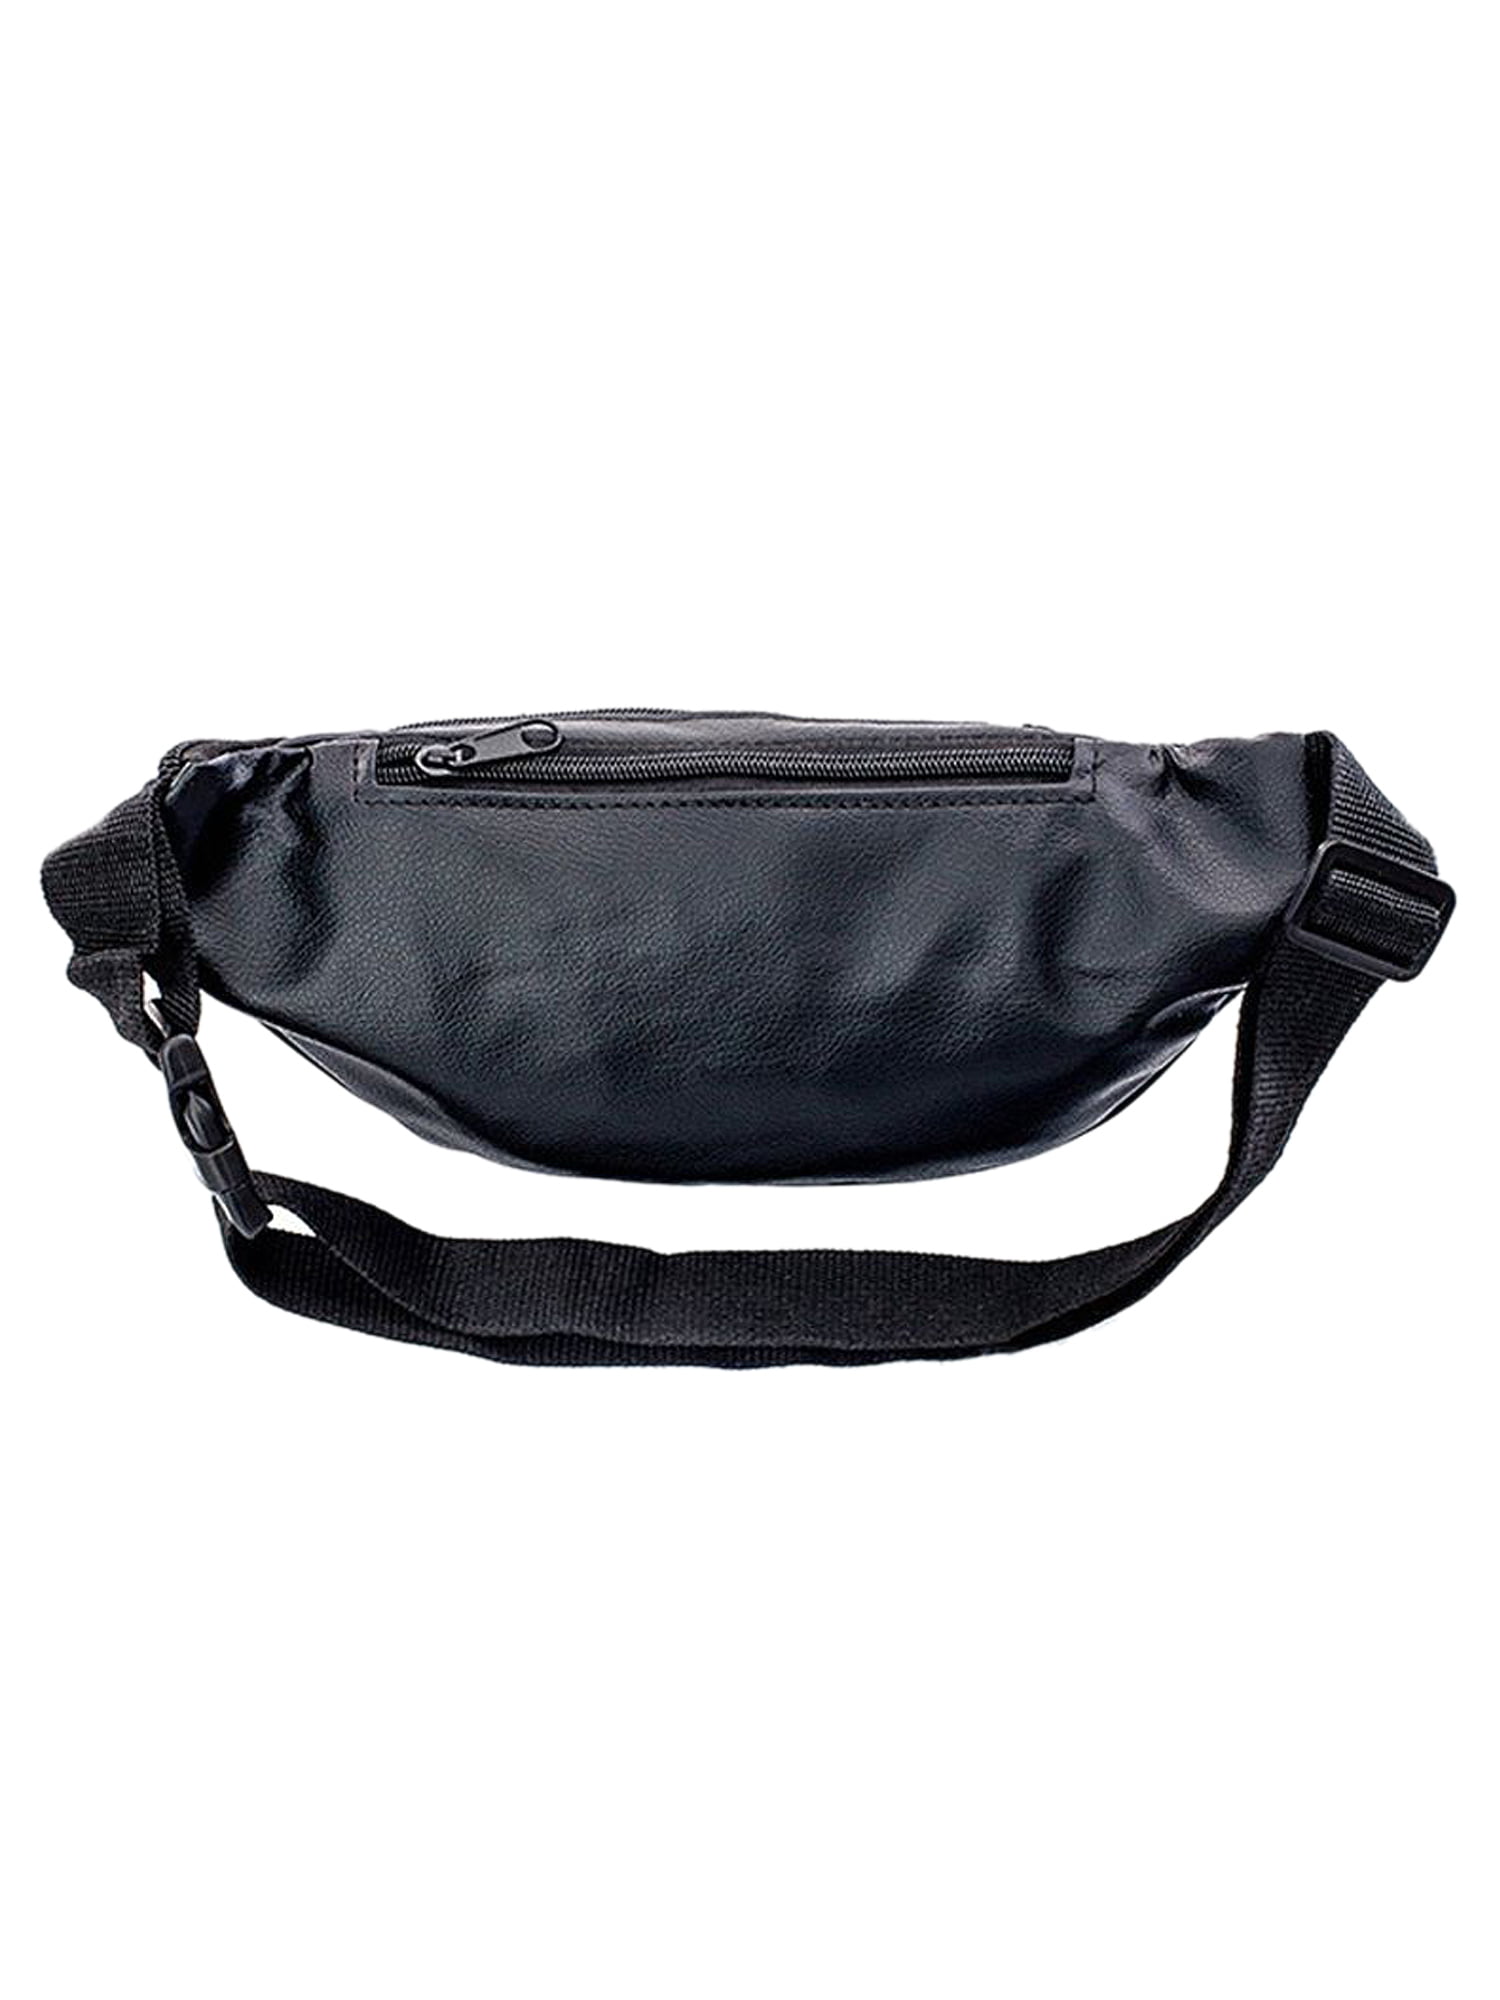 Paddsun Fanny Pack For Waist Bag Men Women Hip Belt Pouch Pocket Travel  Sport Waterproof 